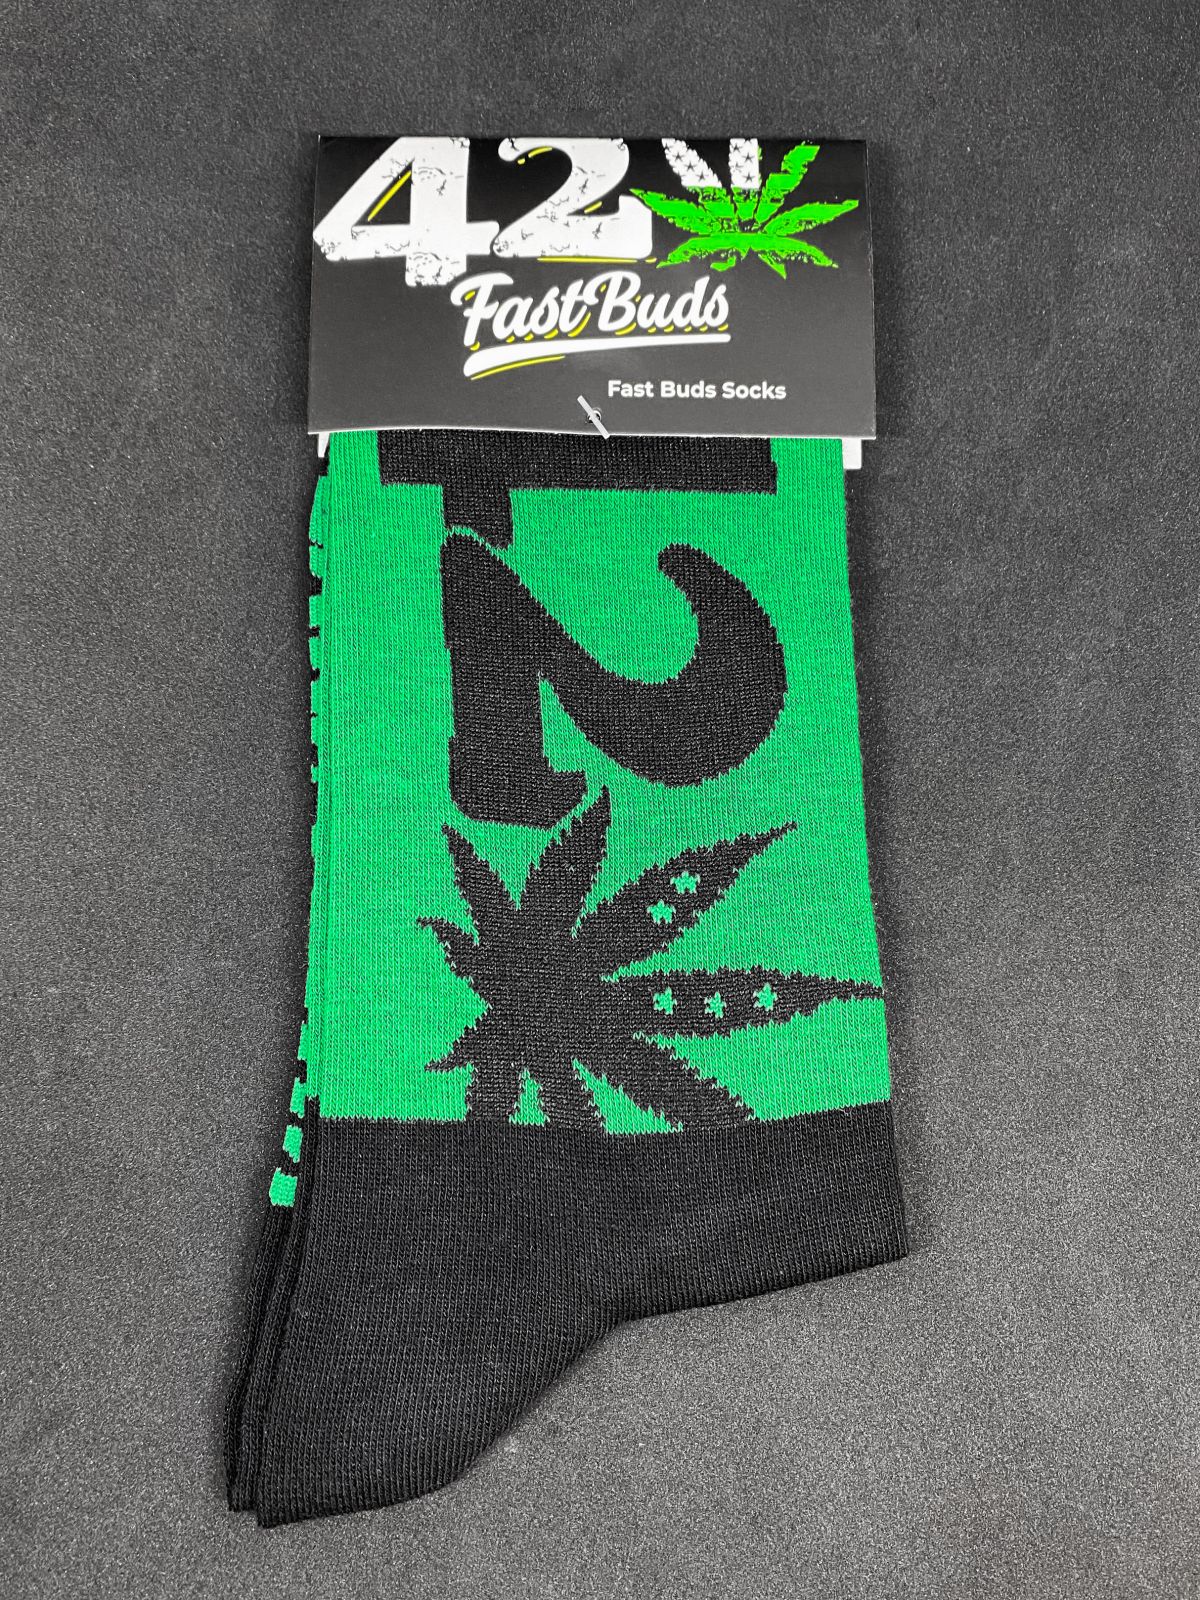 420 Socks | SeedsPlug